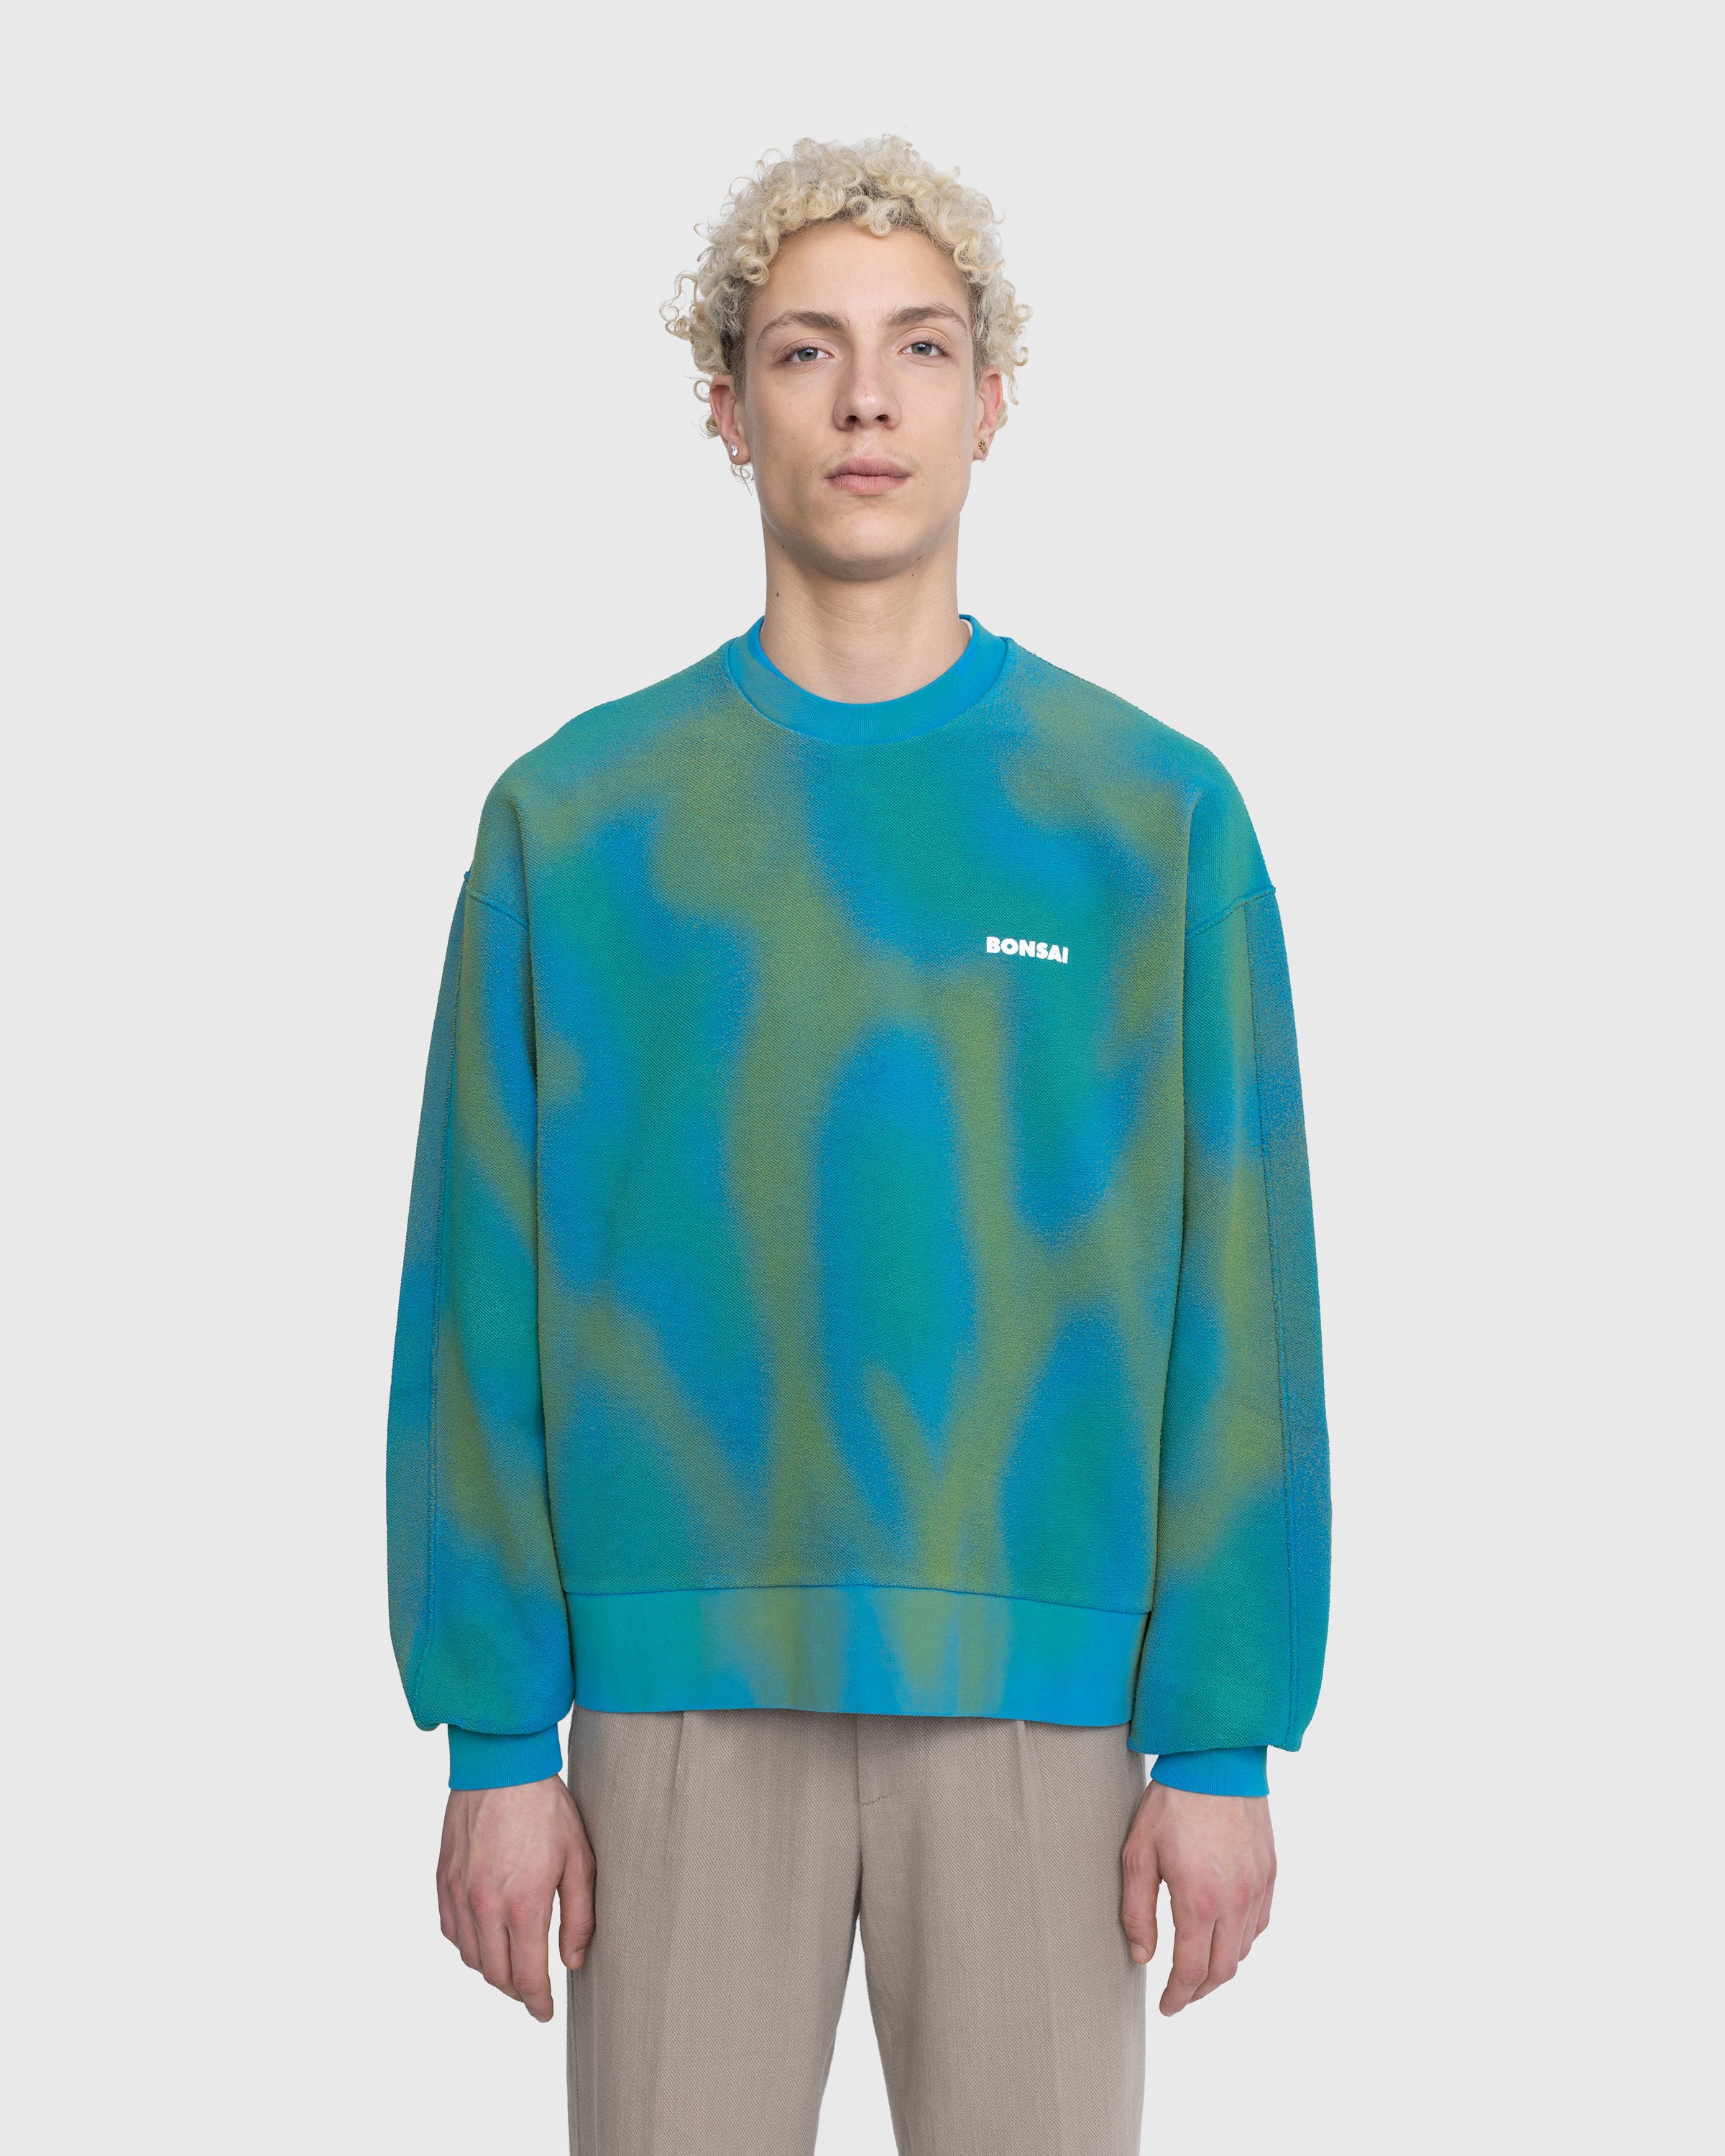 Bonsai - Spray Dyed Crewneck Sweatshirt Blue - Clothing - Blue - Image 2